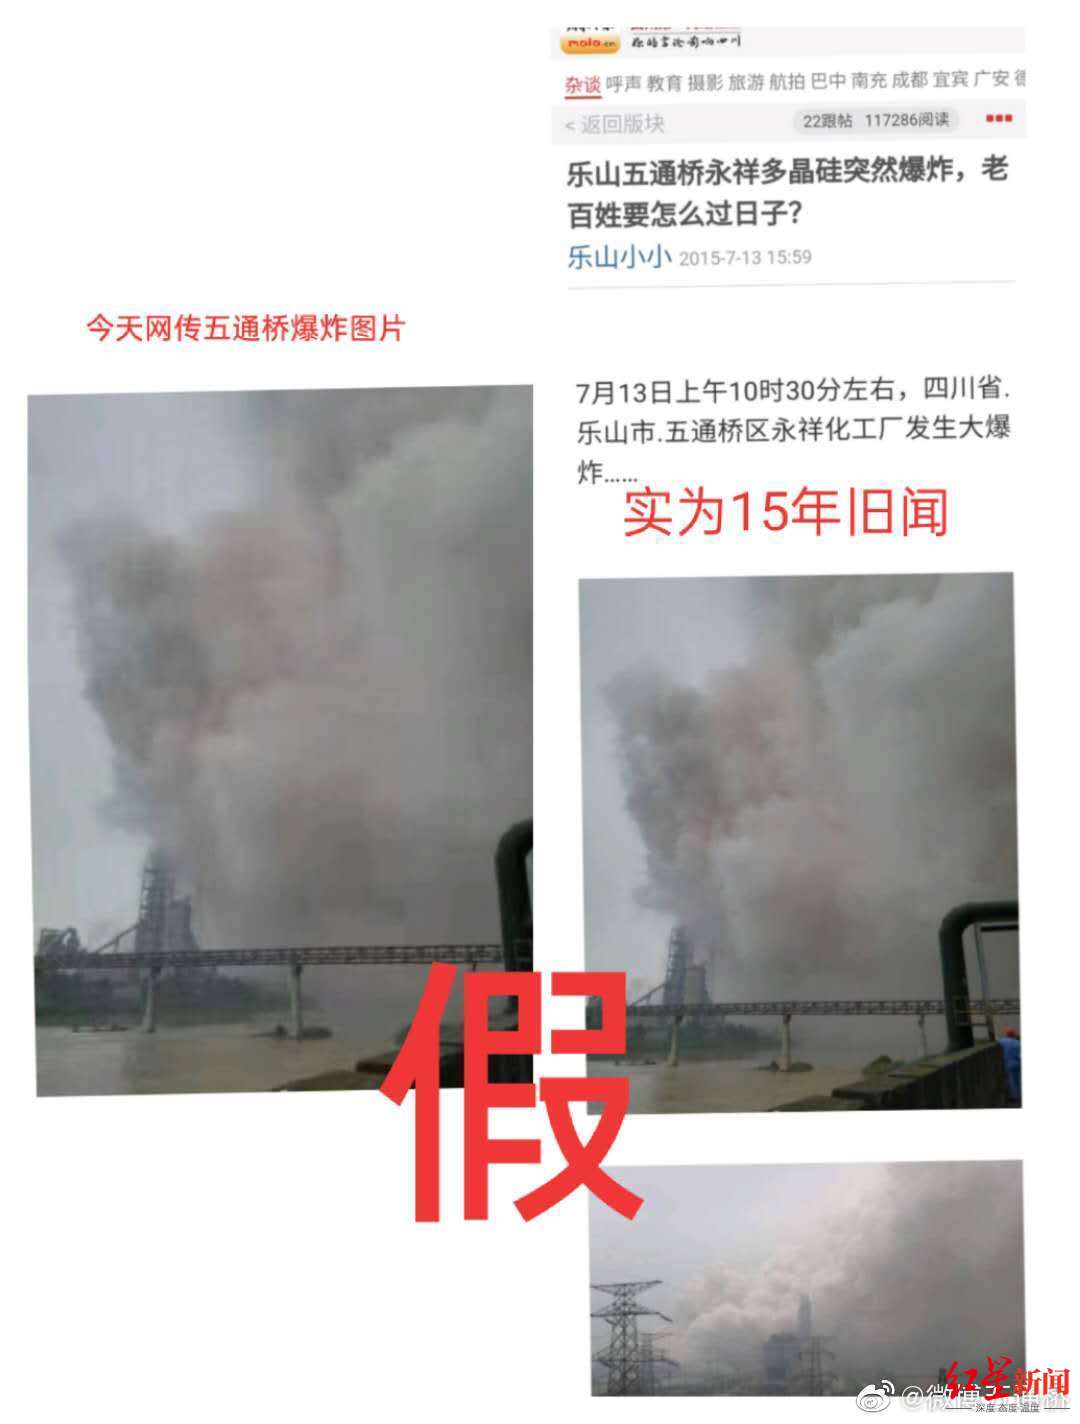 这些都是谣言！乐山五通桥现异味烟雾 官方：部分网传图片和视频系旧闻